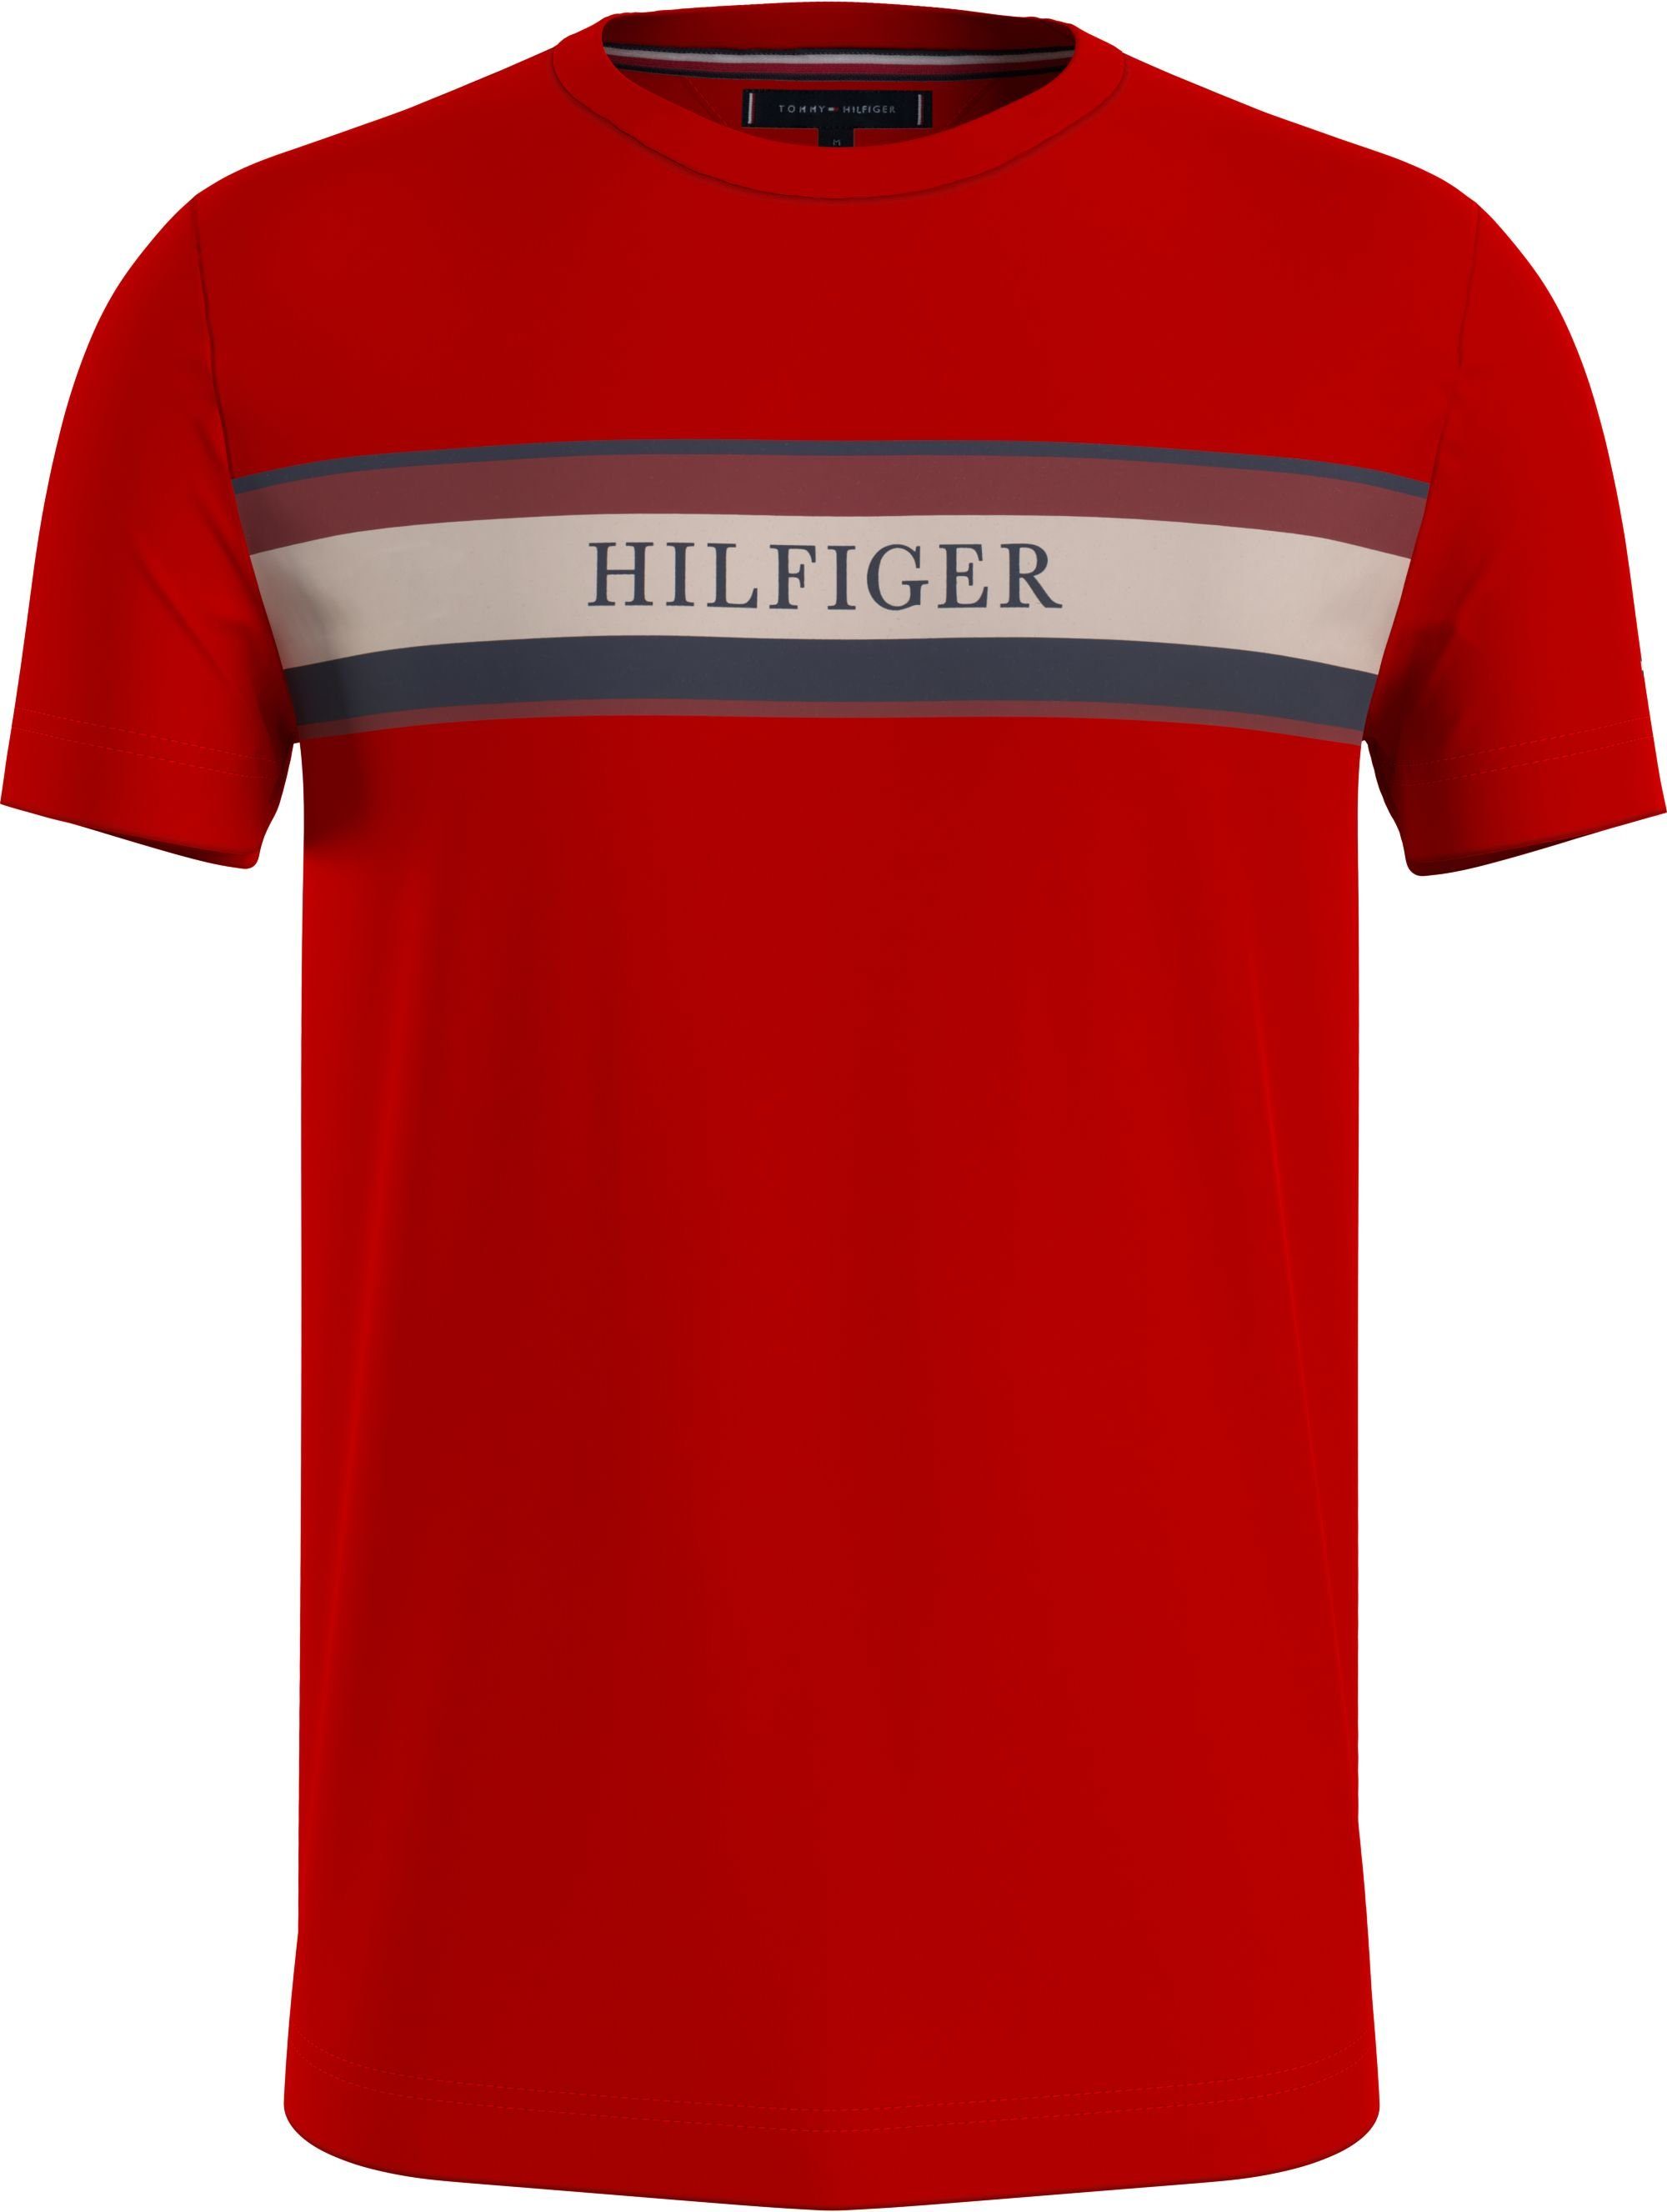 Neues Modell Tommy Hilfiger T-Shirt CHEST HILFIGER auf STRIPE TEE Streifenprint mit rot Brust der